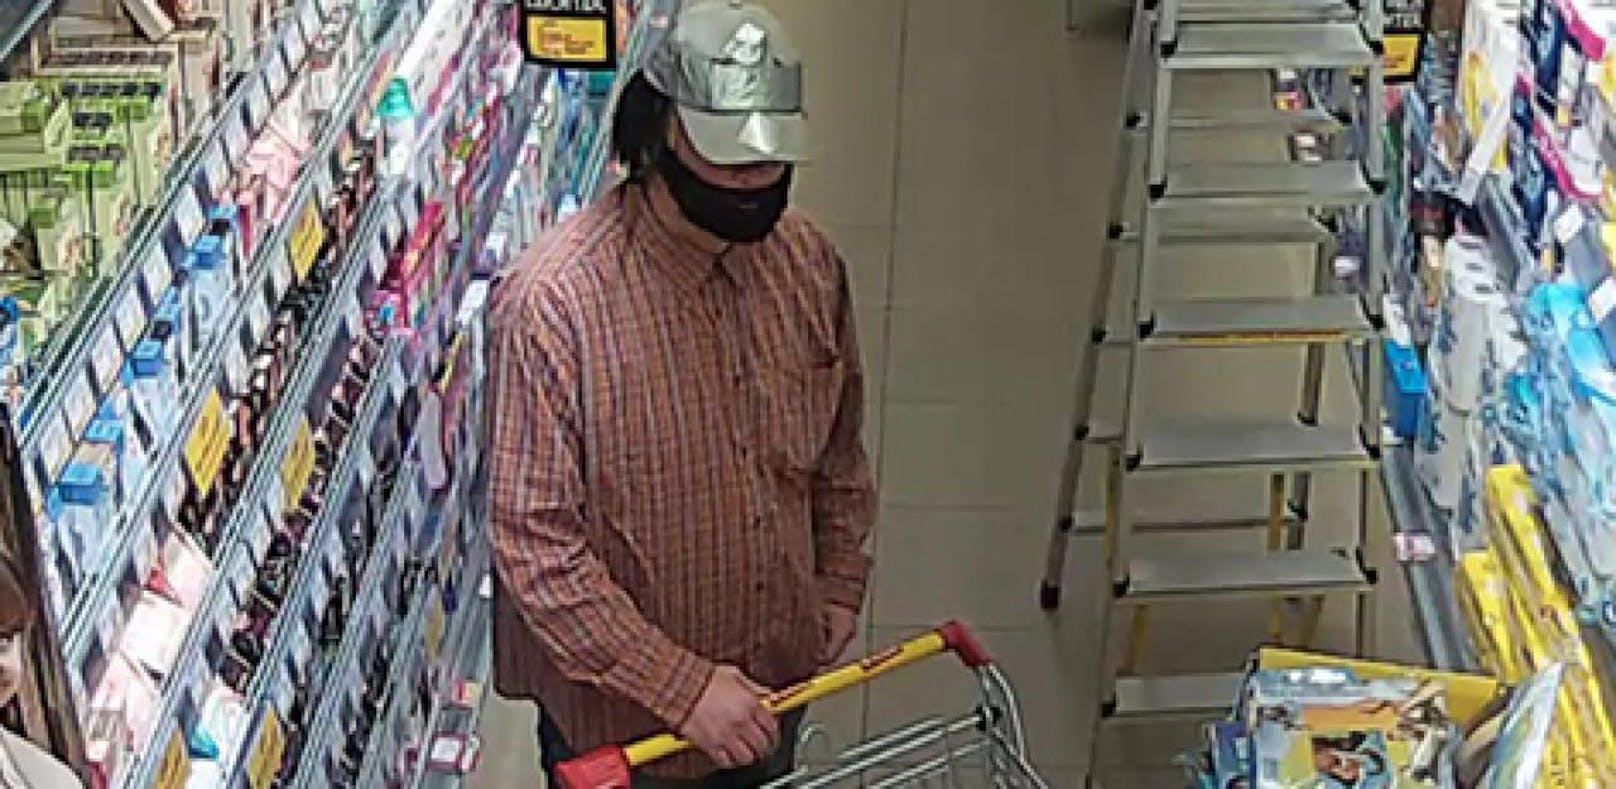 Der Mann bedrohte eine Supermarkt-Kassiererin mit einer Pistole und verlangte Bargeld.